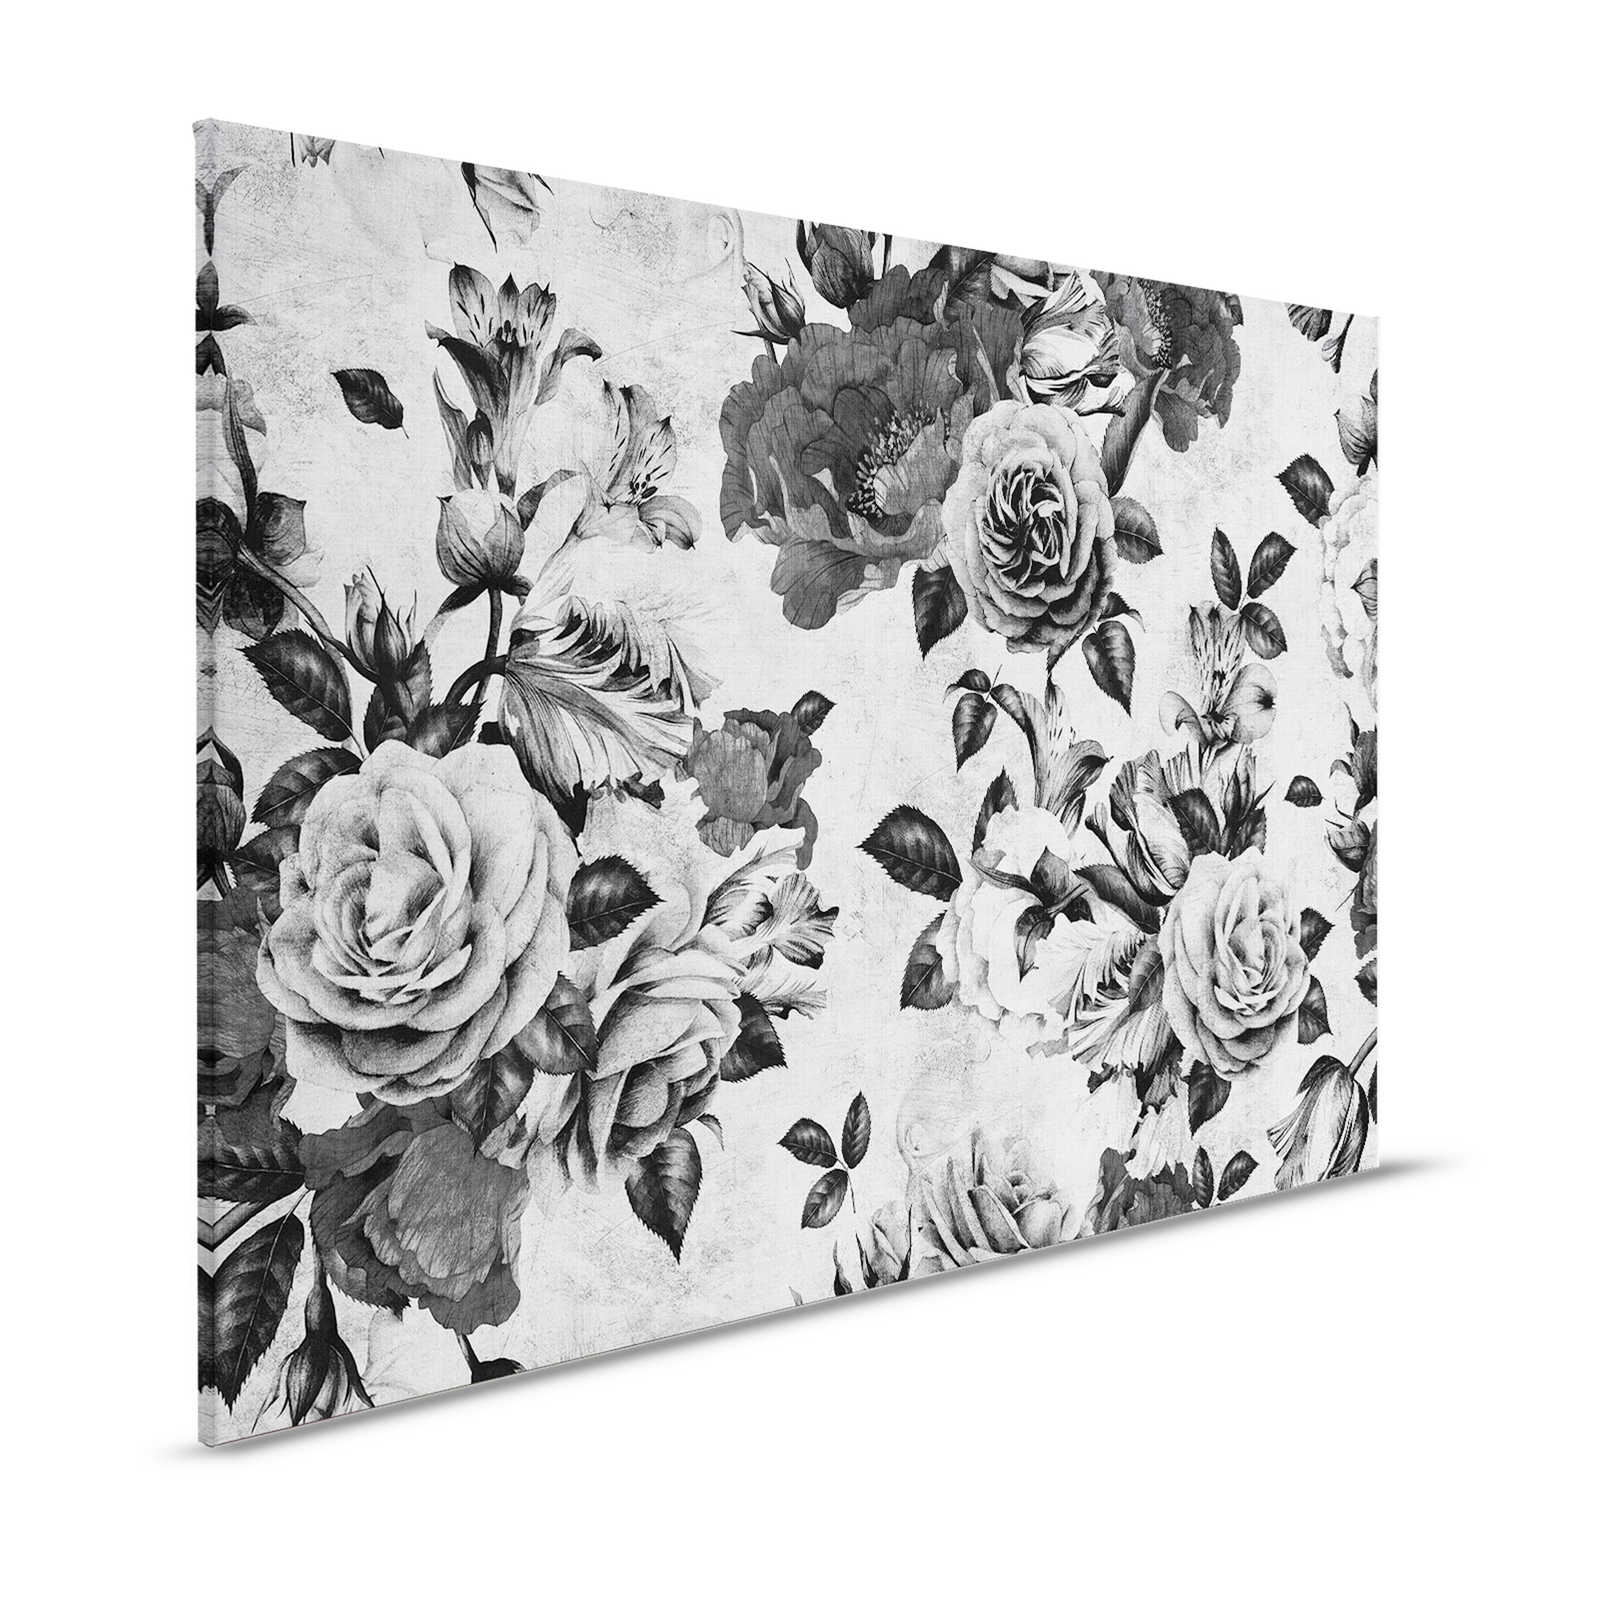 Spanish rose 1 - toile de roses avec fleurs en noir et blanc - 1,20 m x 0,80 m
